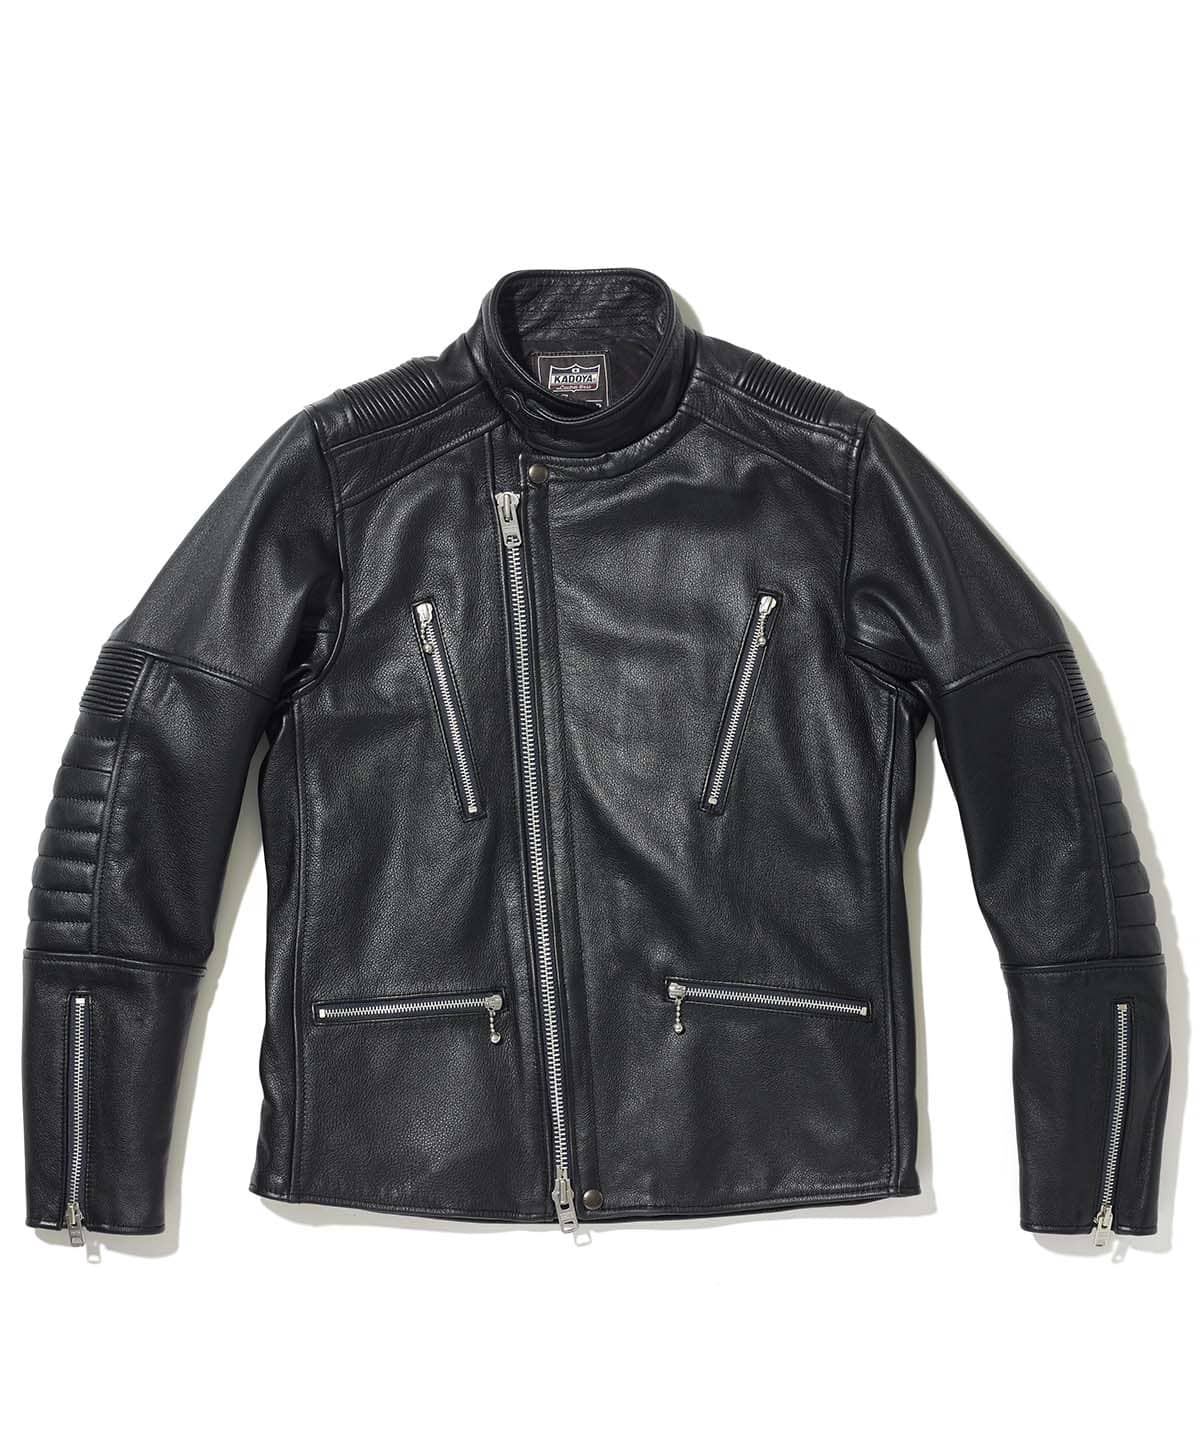 Leather jacket high neck semi-double leather jacket | Kadoya ...